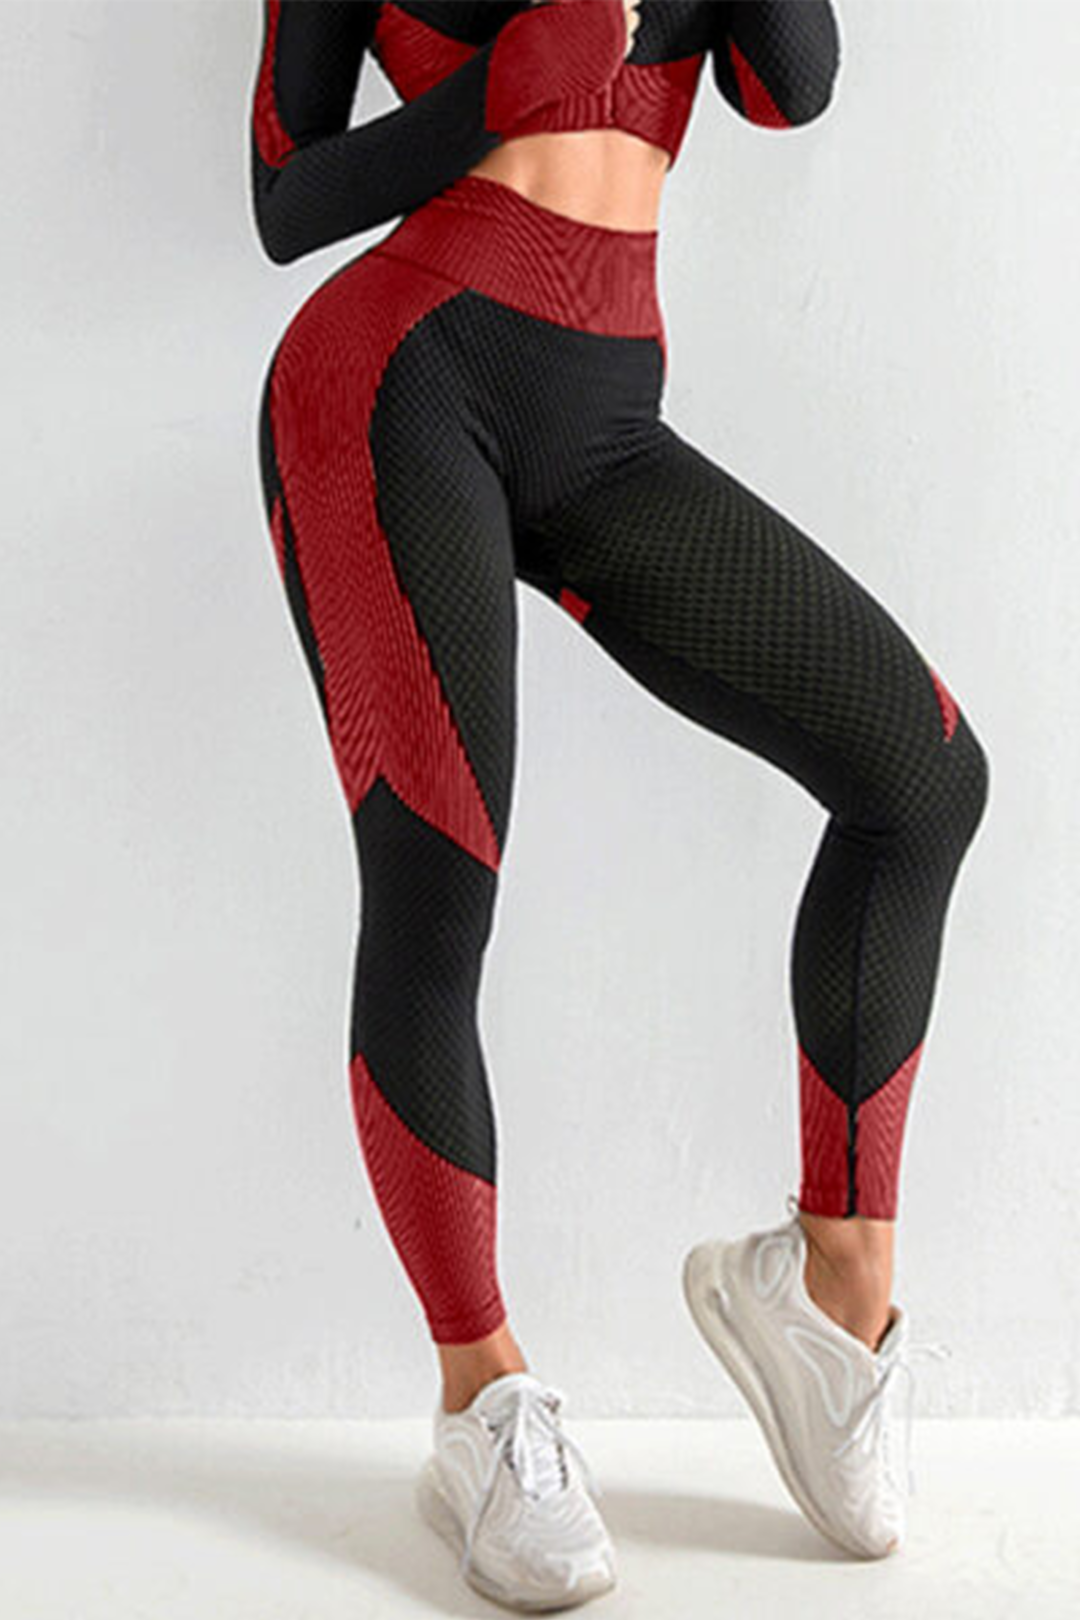 Women's Fitness Shapewear Yoga Sweatwear Lingerie Suit Underwear